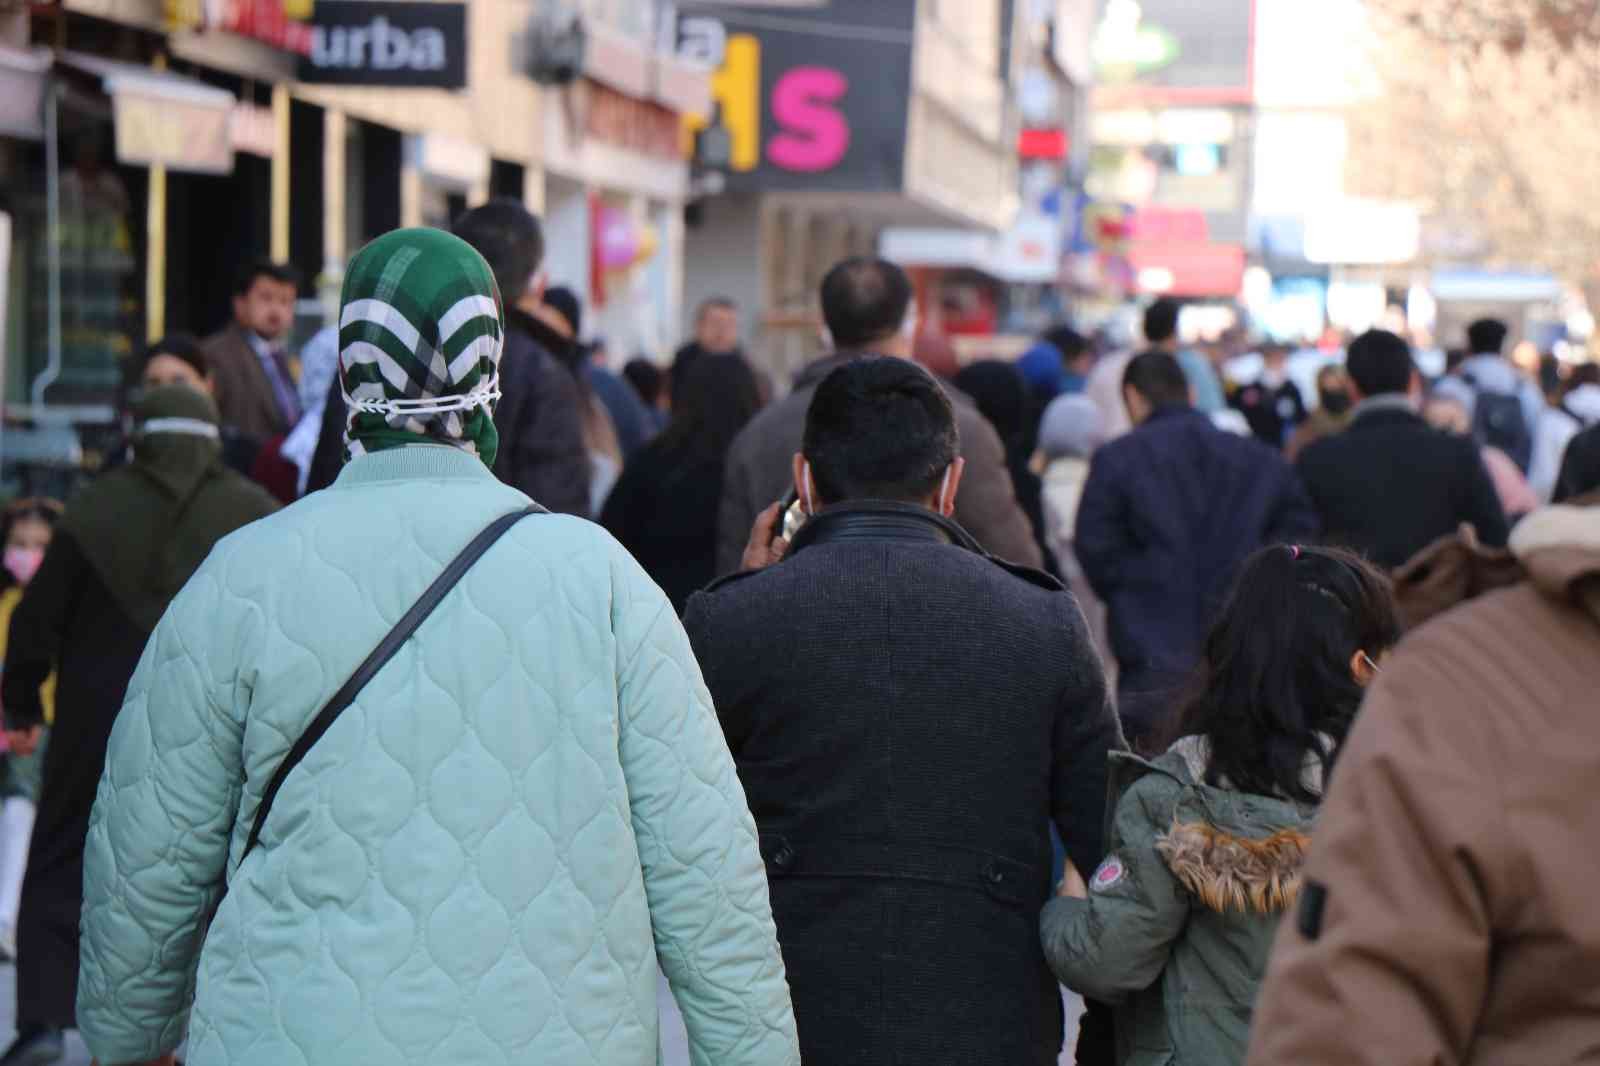 Kırşehir, vaka sayısı en çok artan 10 il arasında #kirsehir